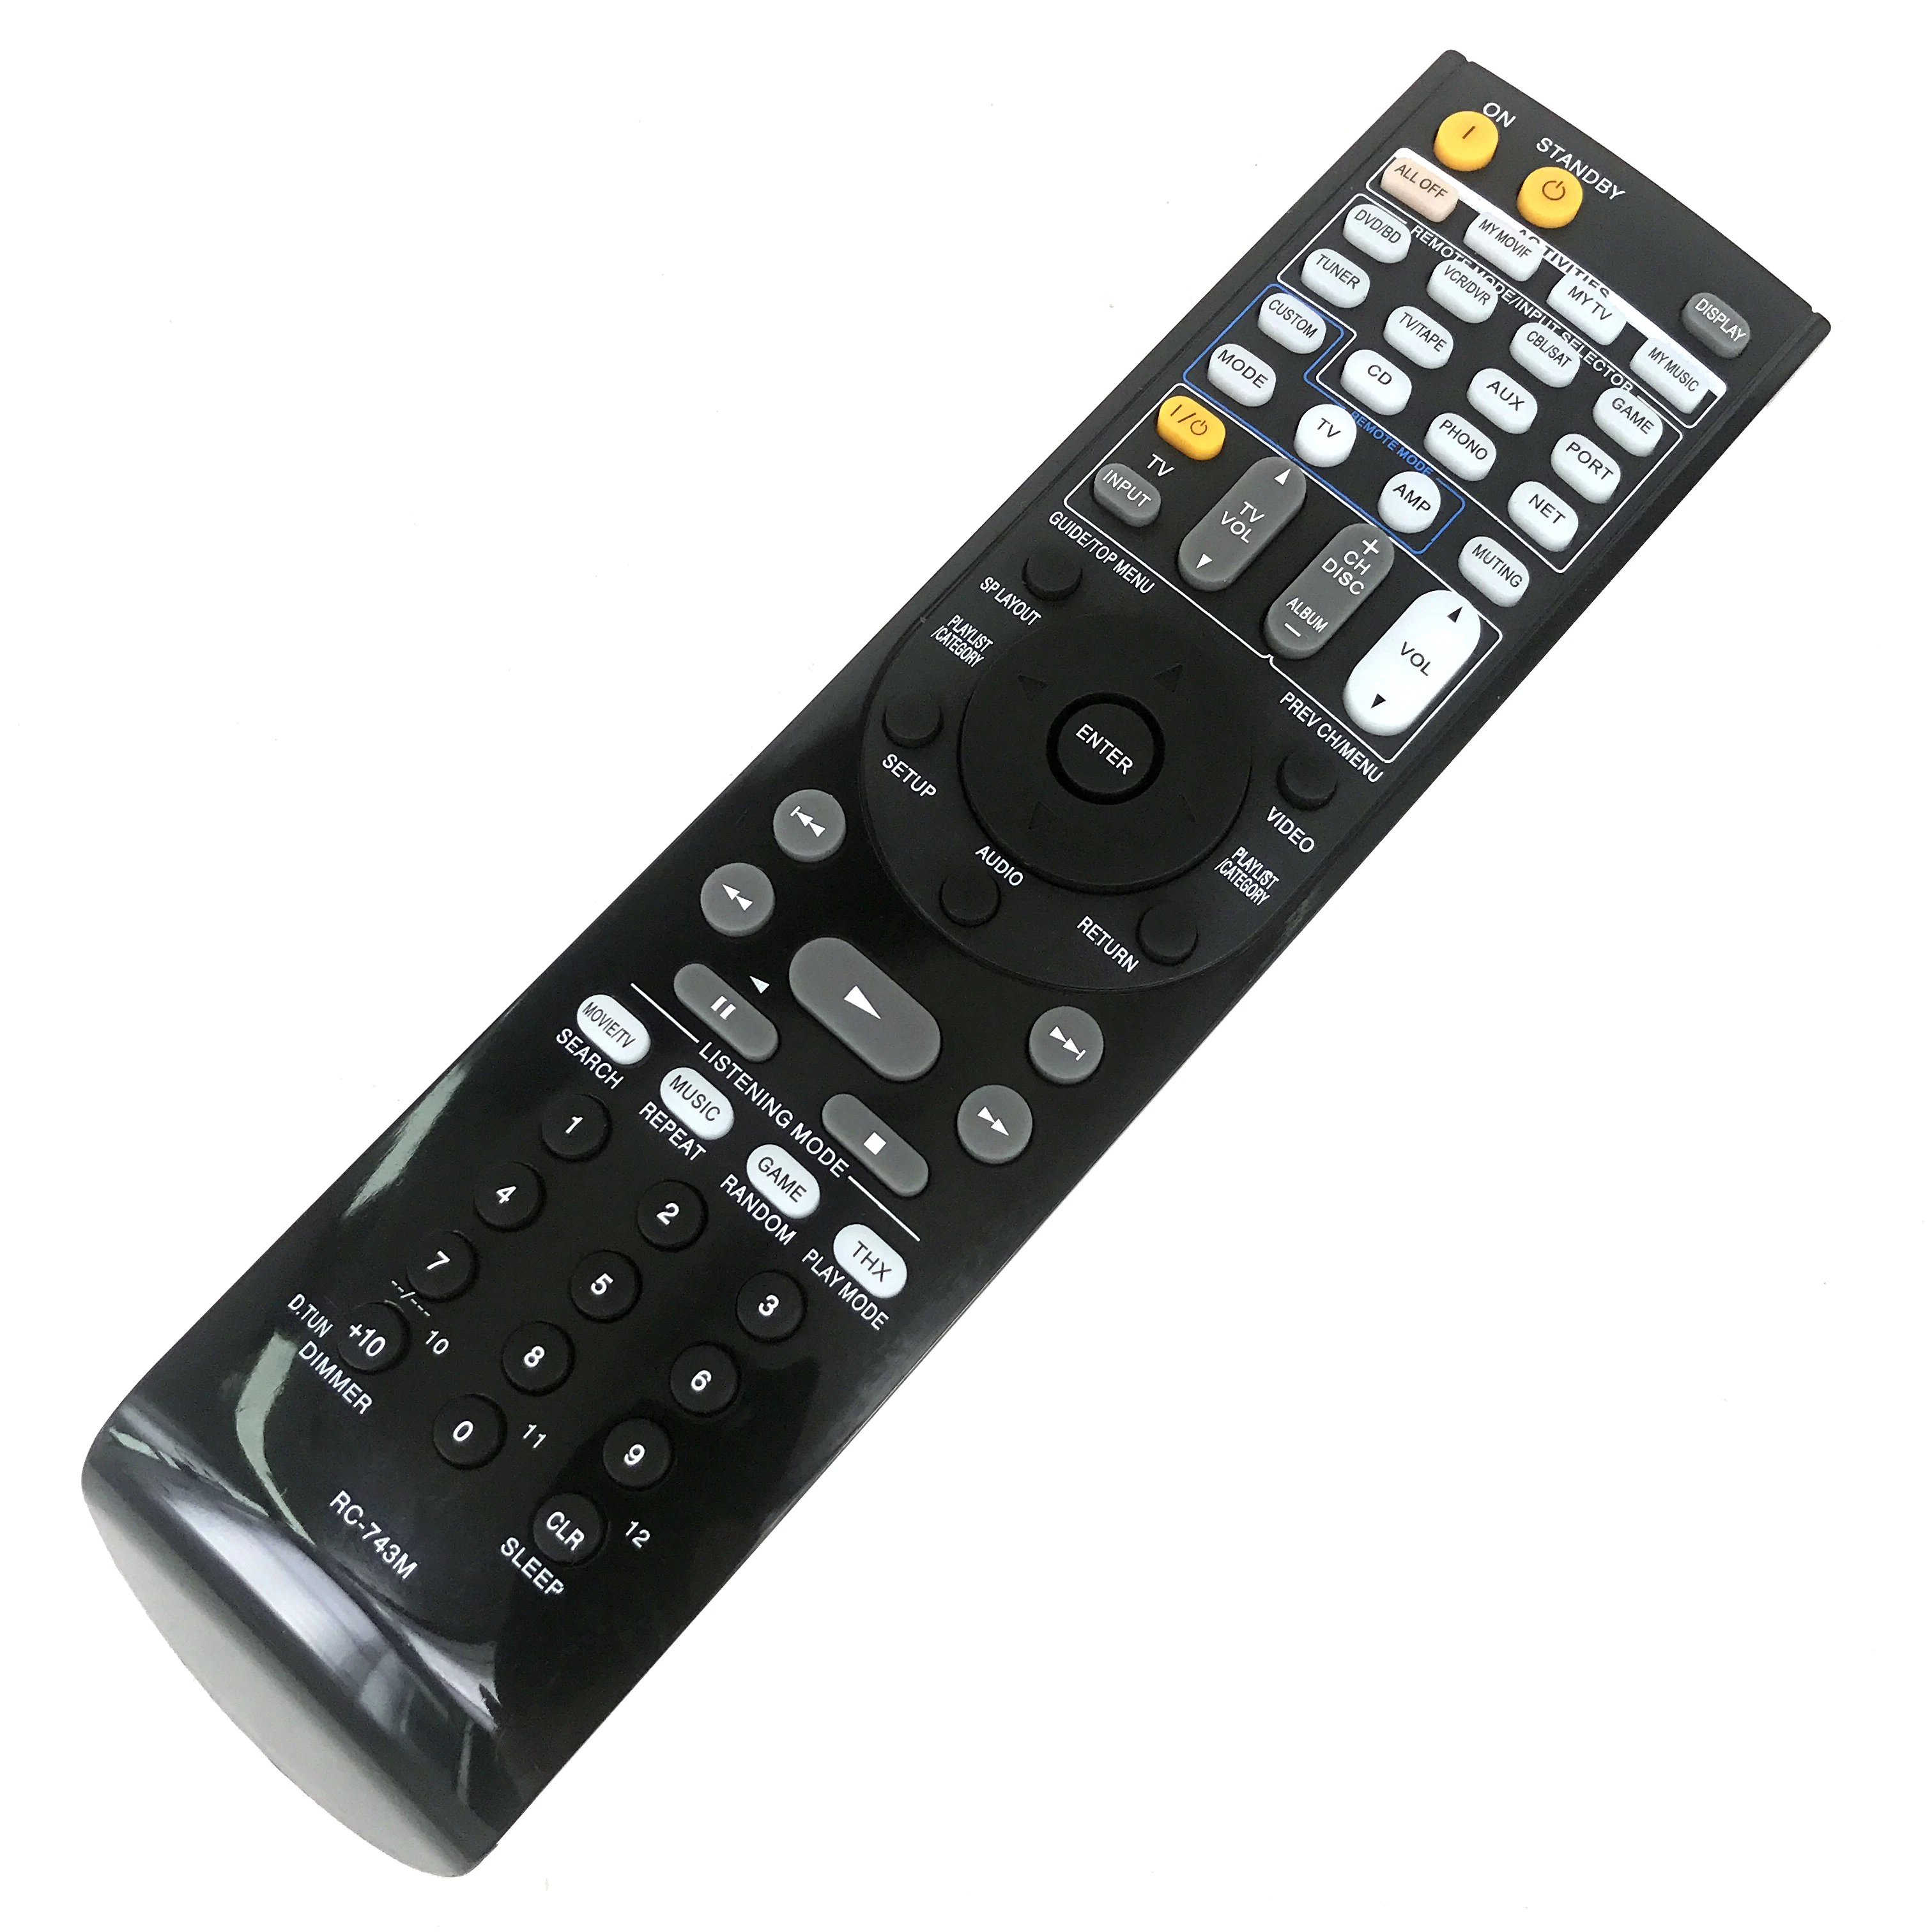 NEW Replacement RC-743M For ONKYO AV Audio Video Receiver Remote Control TX-SR808 TX-SR707 TX-SR706S TX-NR545 HT-R791 TX-NR535